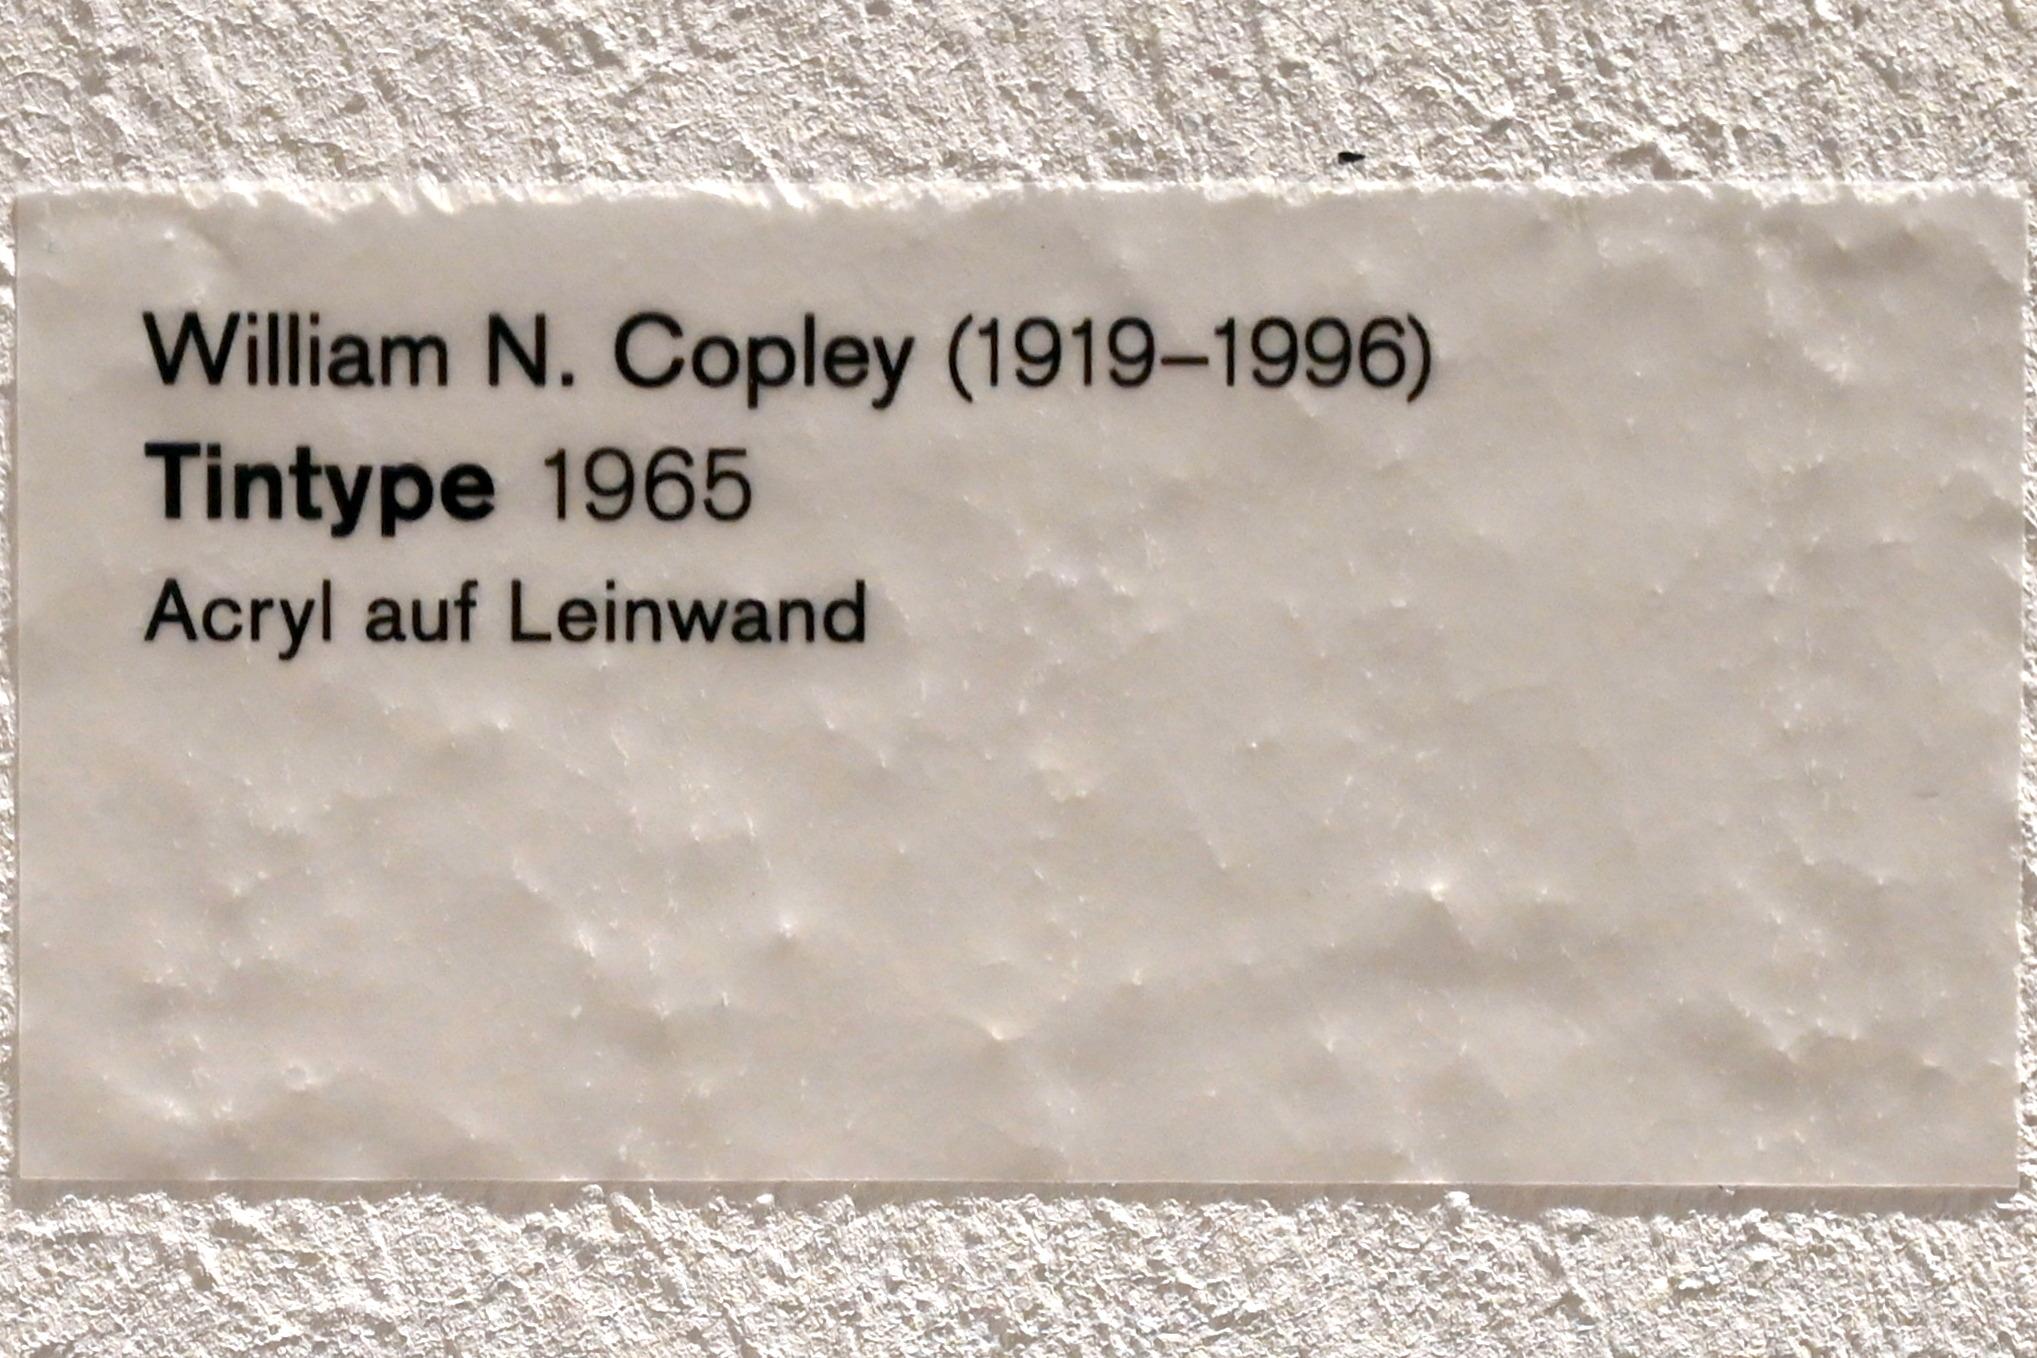 William Copley (1961–1971), Tintype, Ulm, Museum Ulm, Saal 4, 1965, Bild 2/2